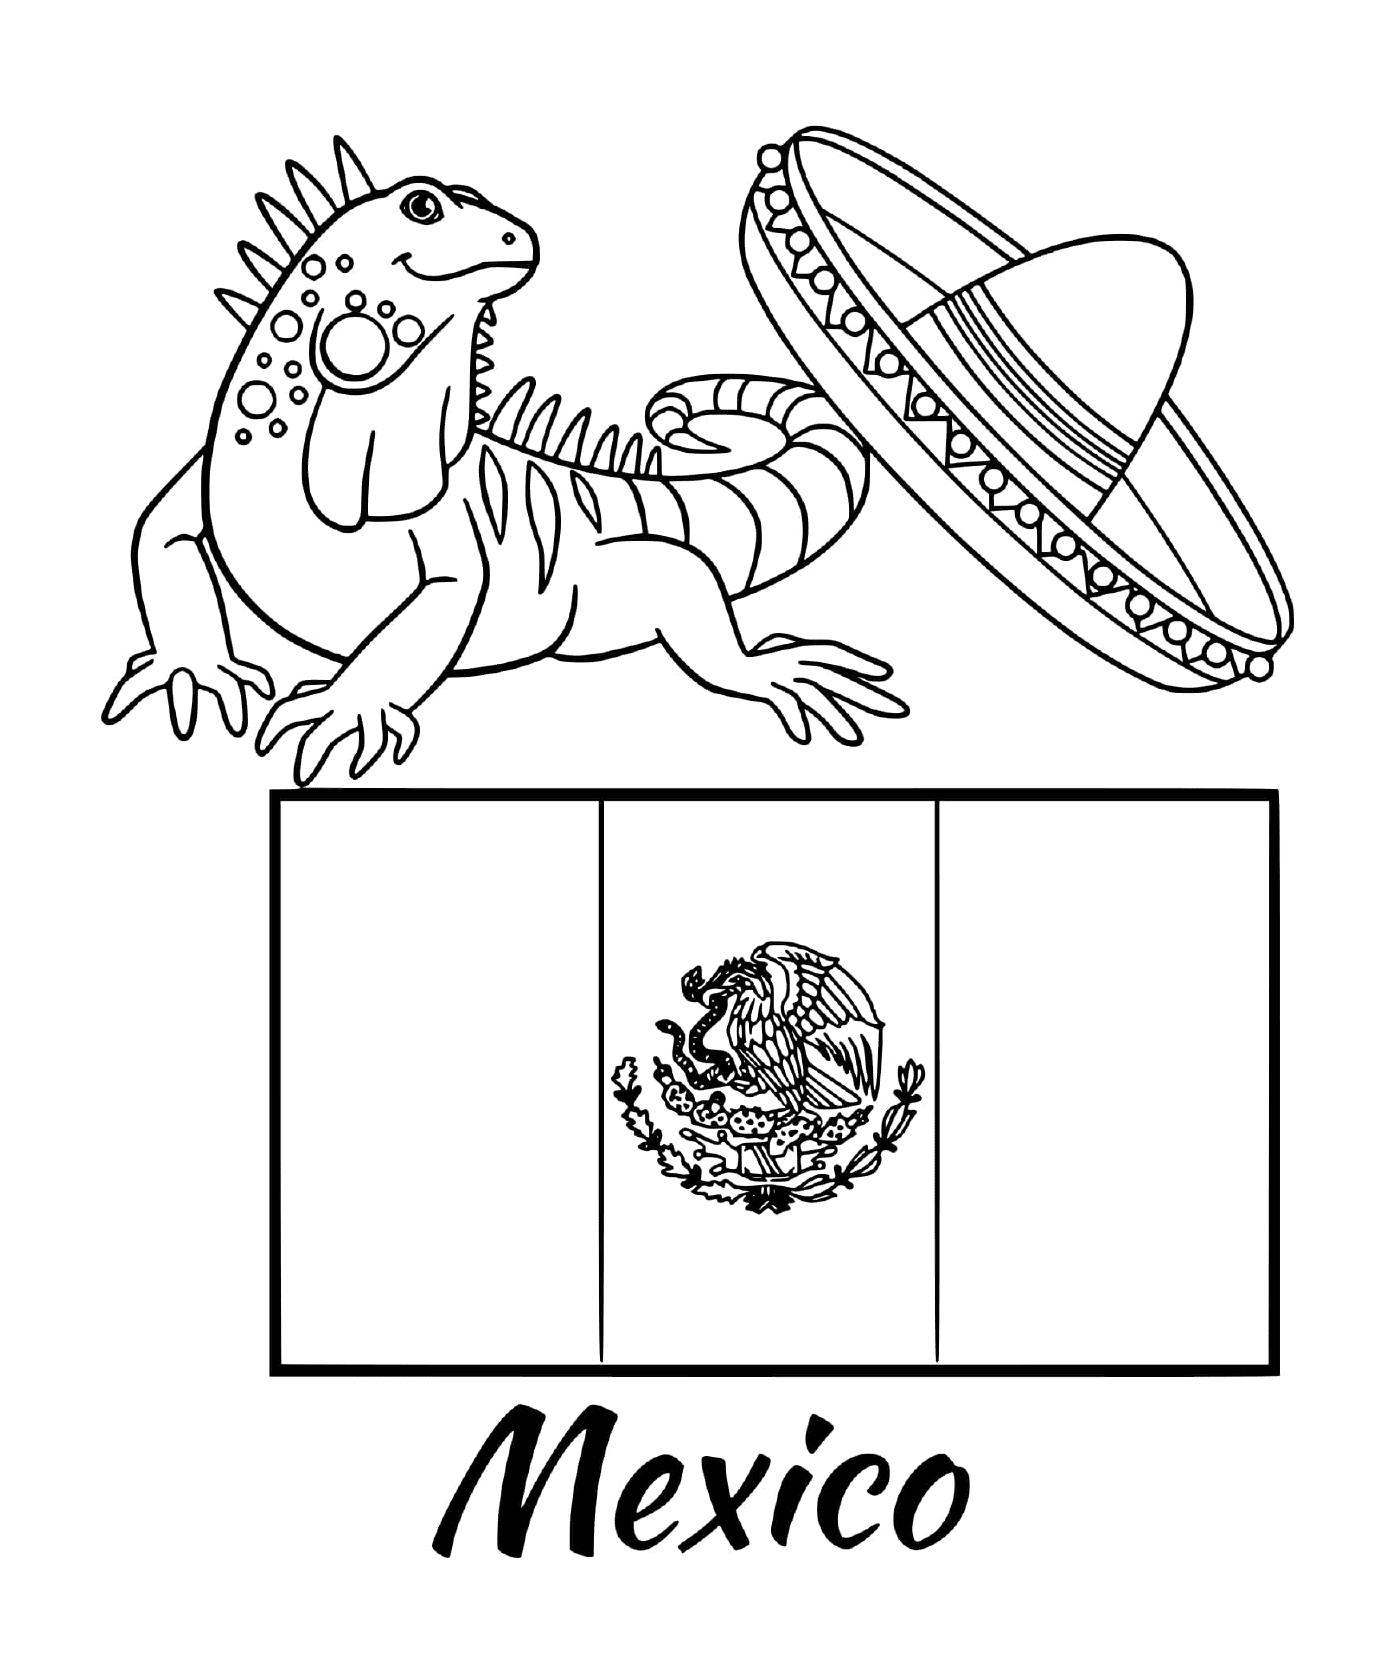  मेक्सिको का झंडा 